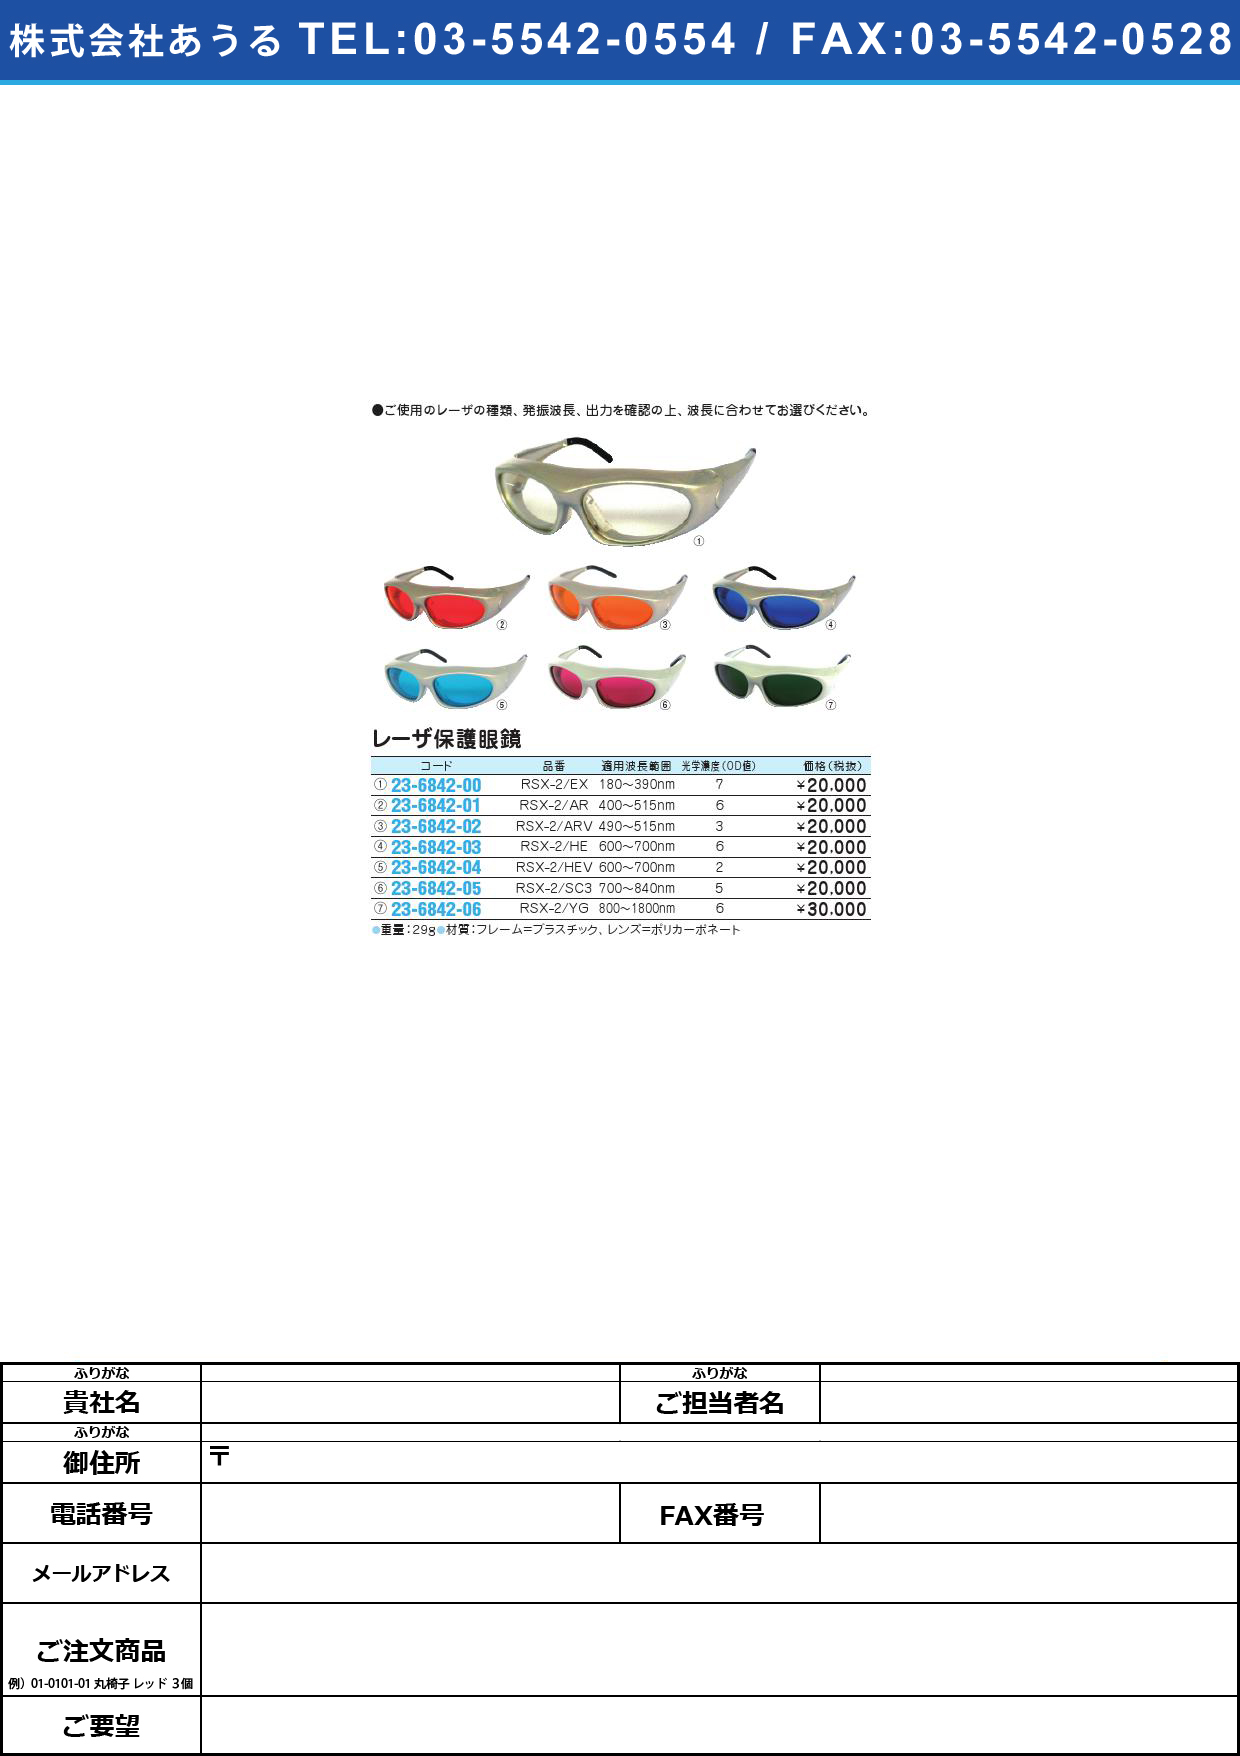 レーザ保護眼鏡 RSX-2/ARVﾚｰｻﾞﾎｺﾞﾒｶﾞﾈ(23-6842-02)【1個単位】